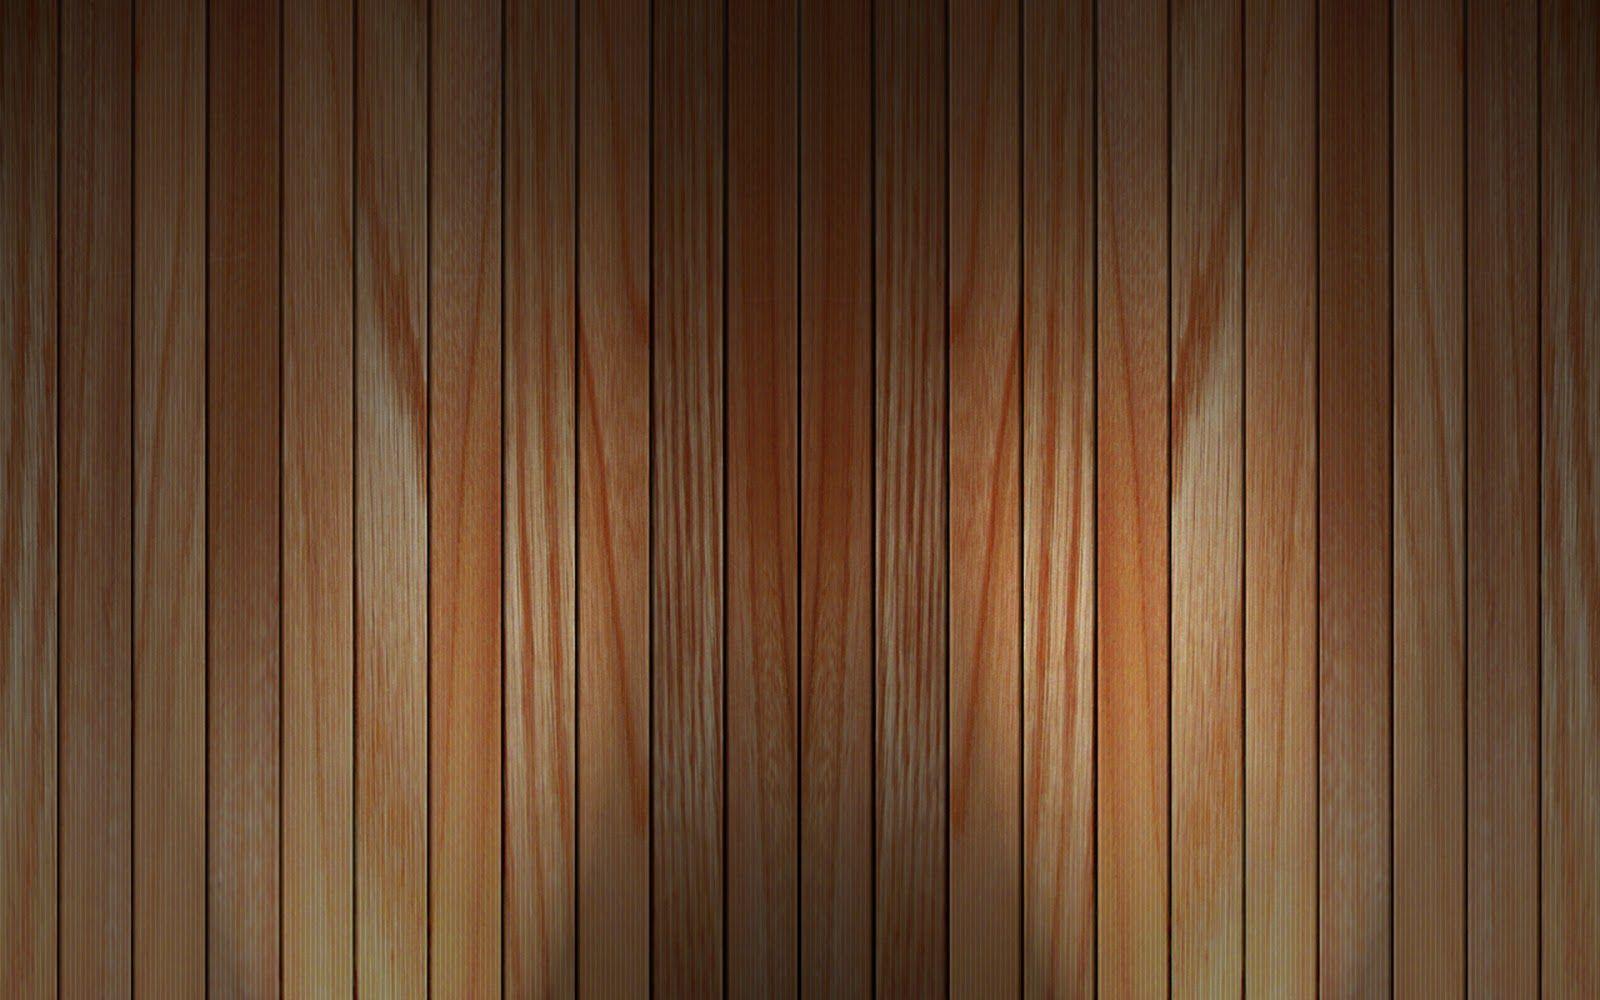 Tường gỗ (Wood walls): Tường gỗ đang trở thành một xu hướng trang trí đầy phong cách trong các ngôi nhà. Thật dễ dàng để nhận thấy sự độc đáo và ấm cúng của nó. Những hình ảnh về tường gỗ sẽ cho bạn đầy đủ mọi ý tưởng để sáng tạo, phối hợp và trang trí cho tường thành của riêng bạn.